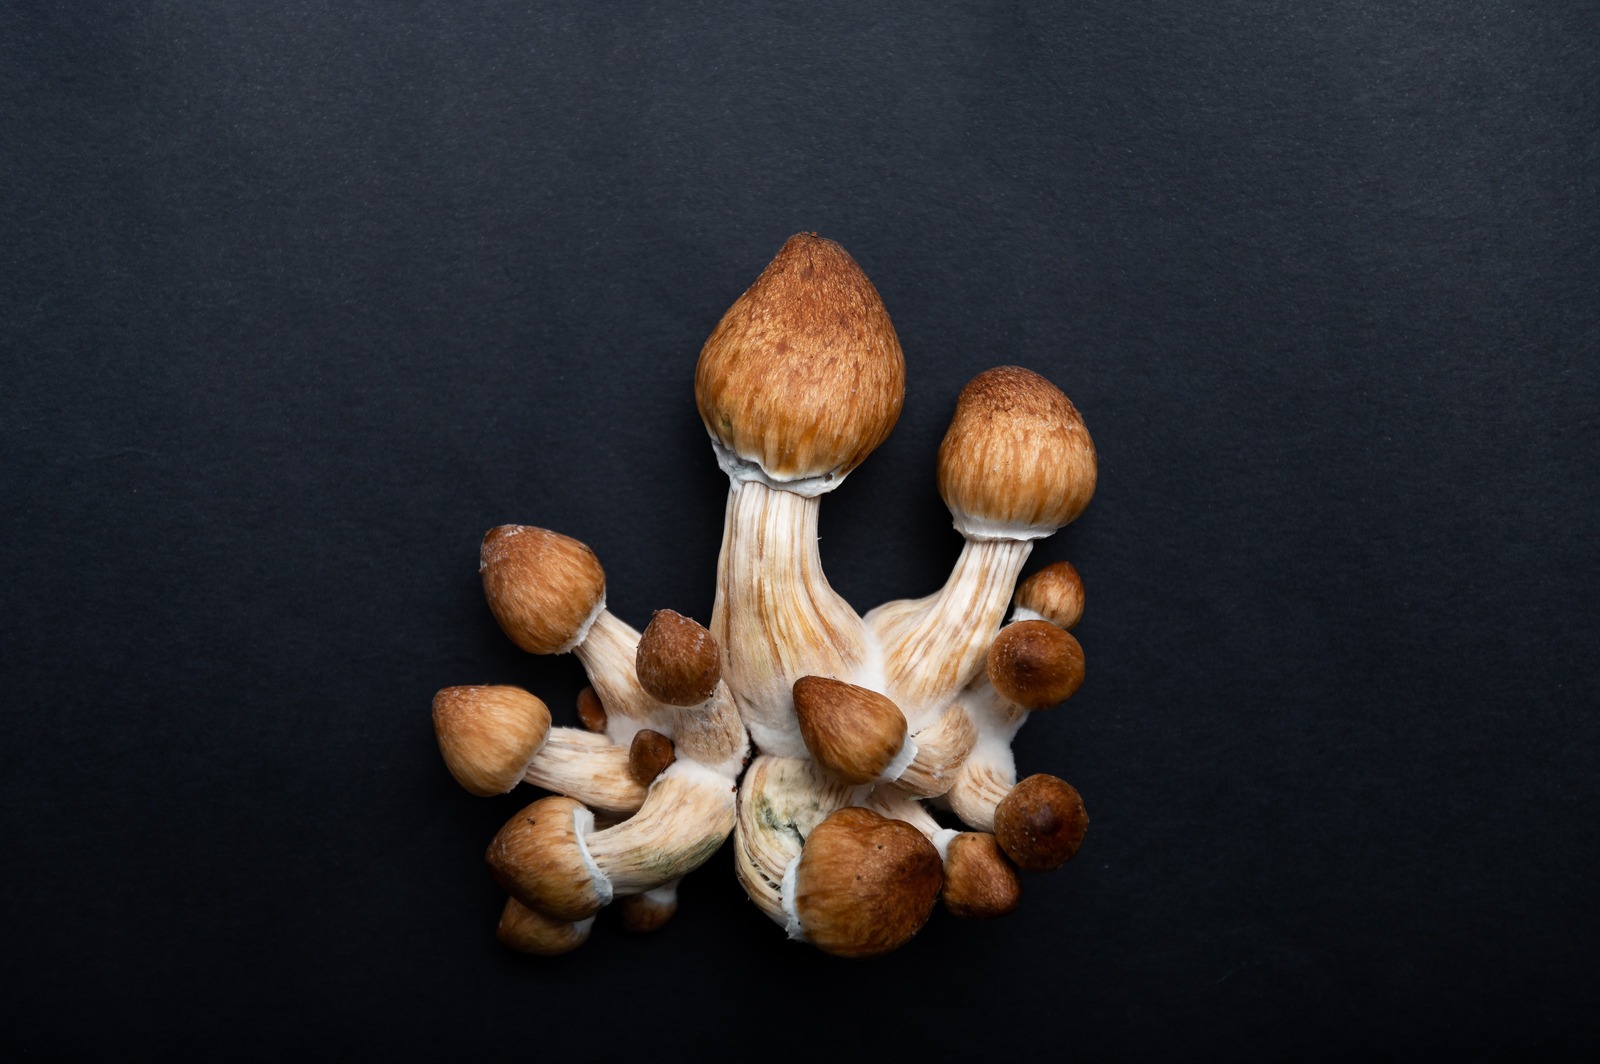 How Does a Mushroom Grow